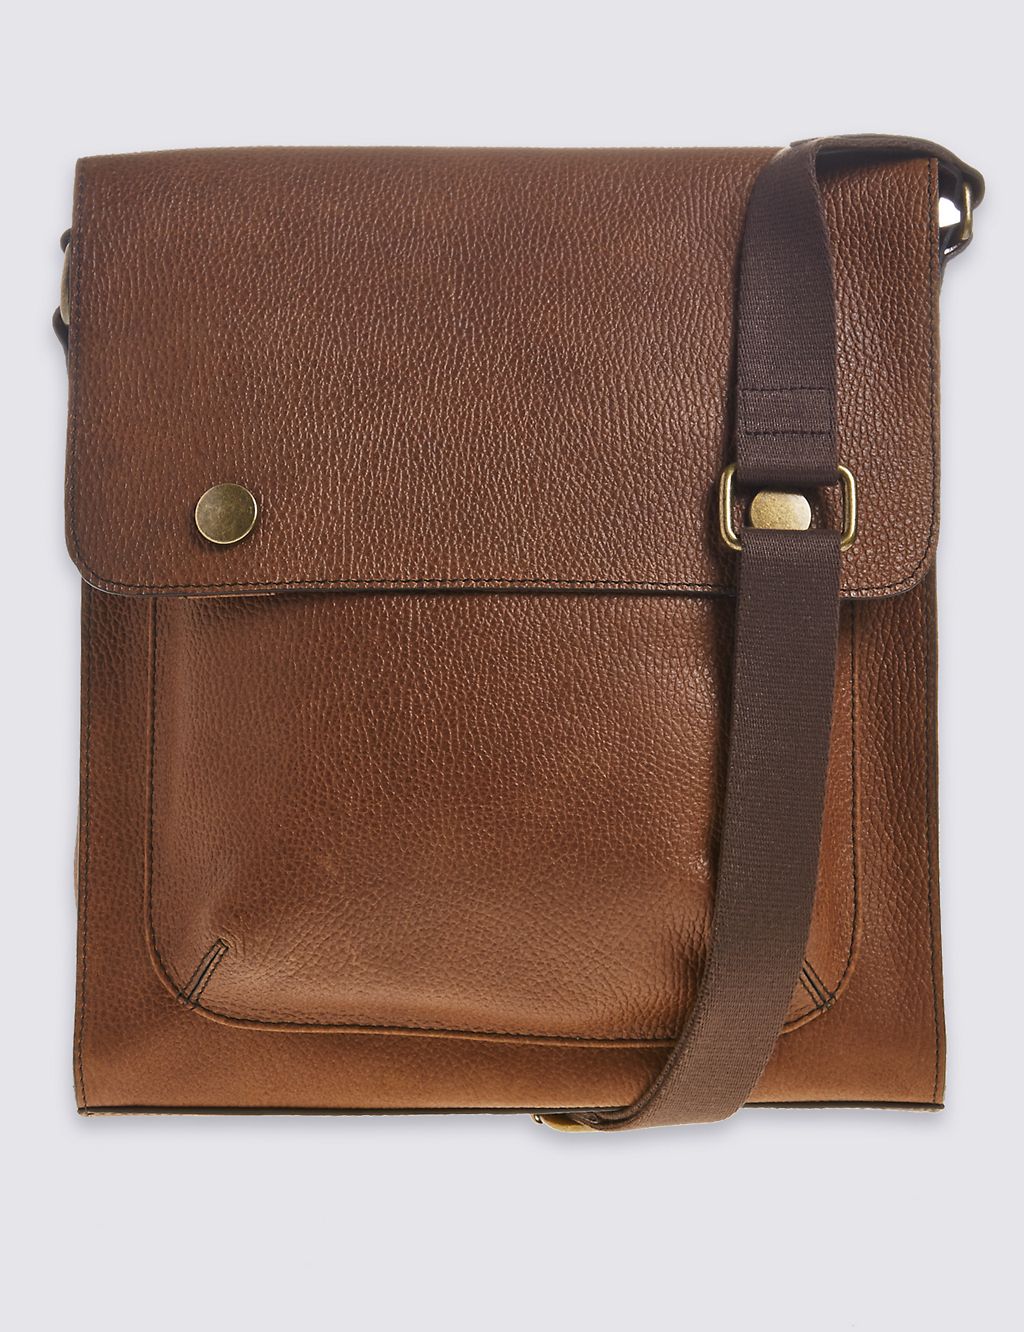 Leather Press Stud Messenger Bag 3 of 5